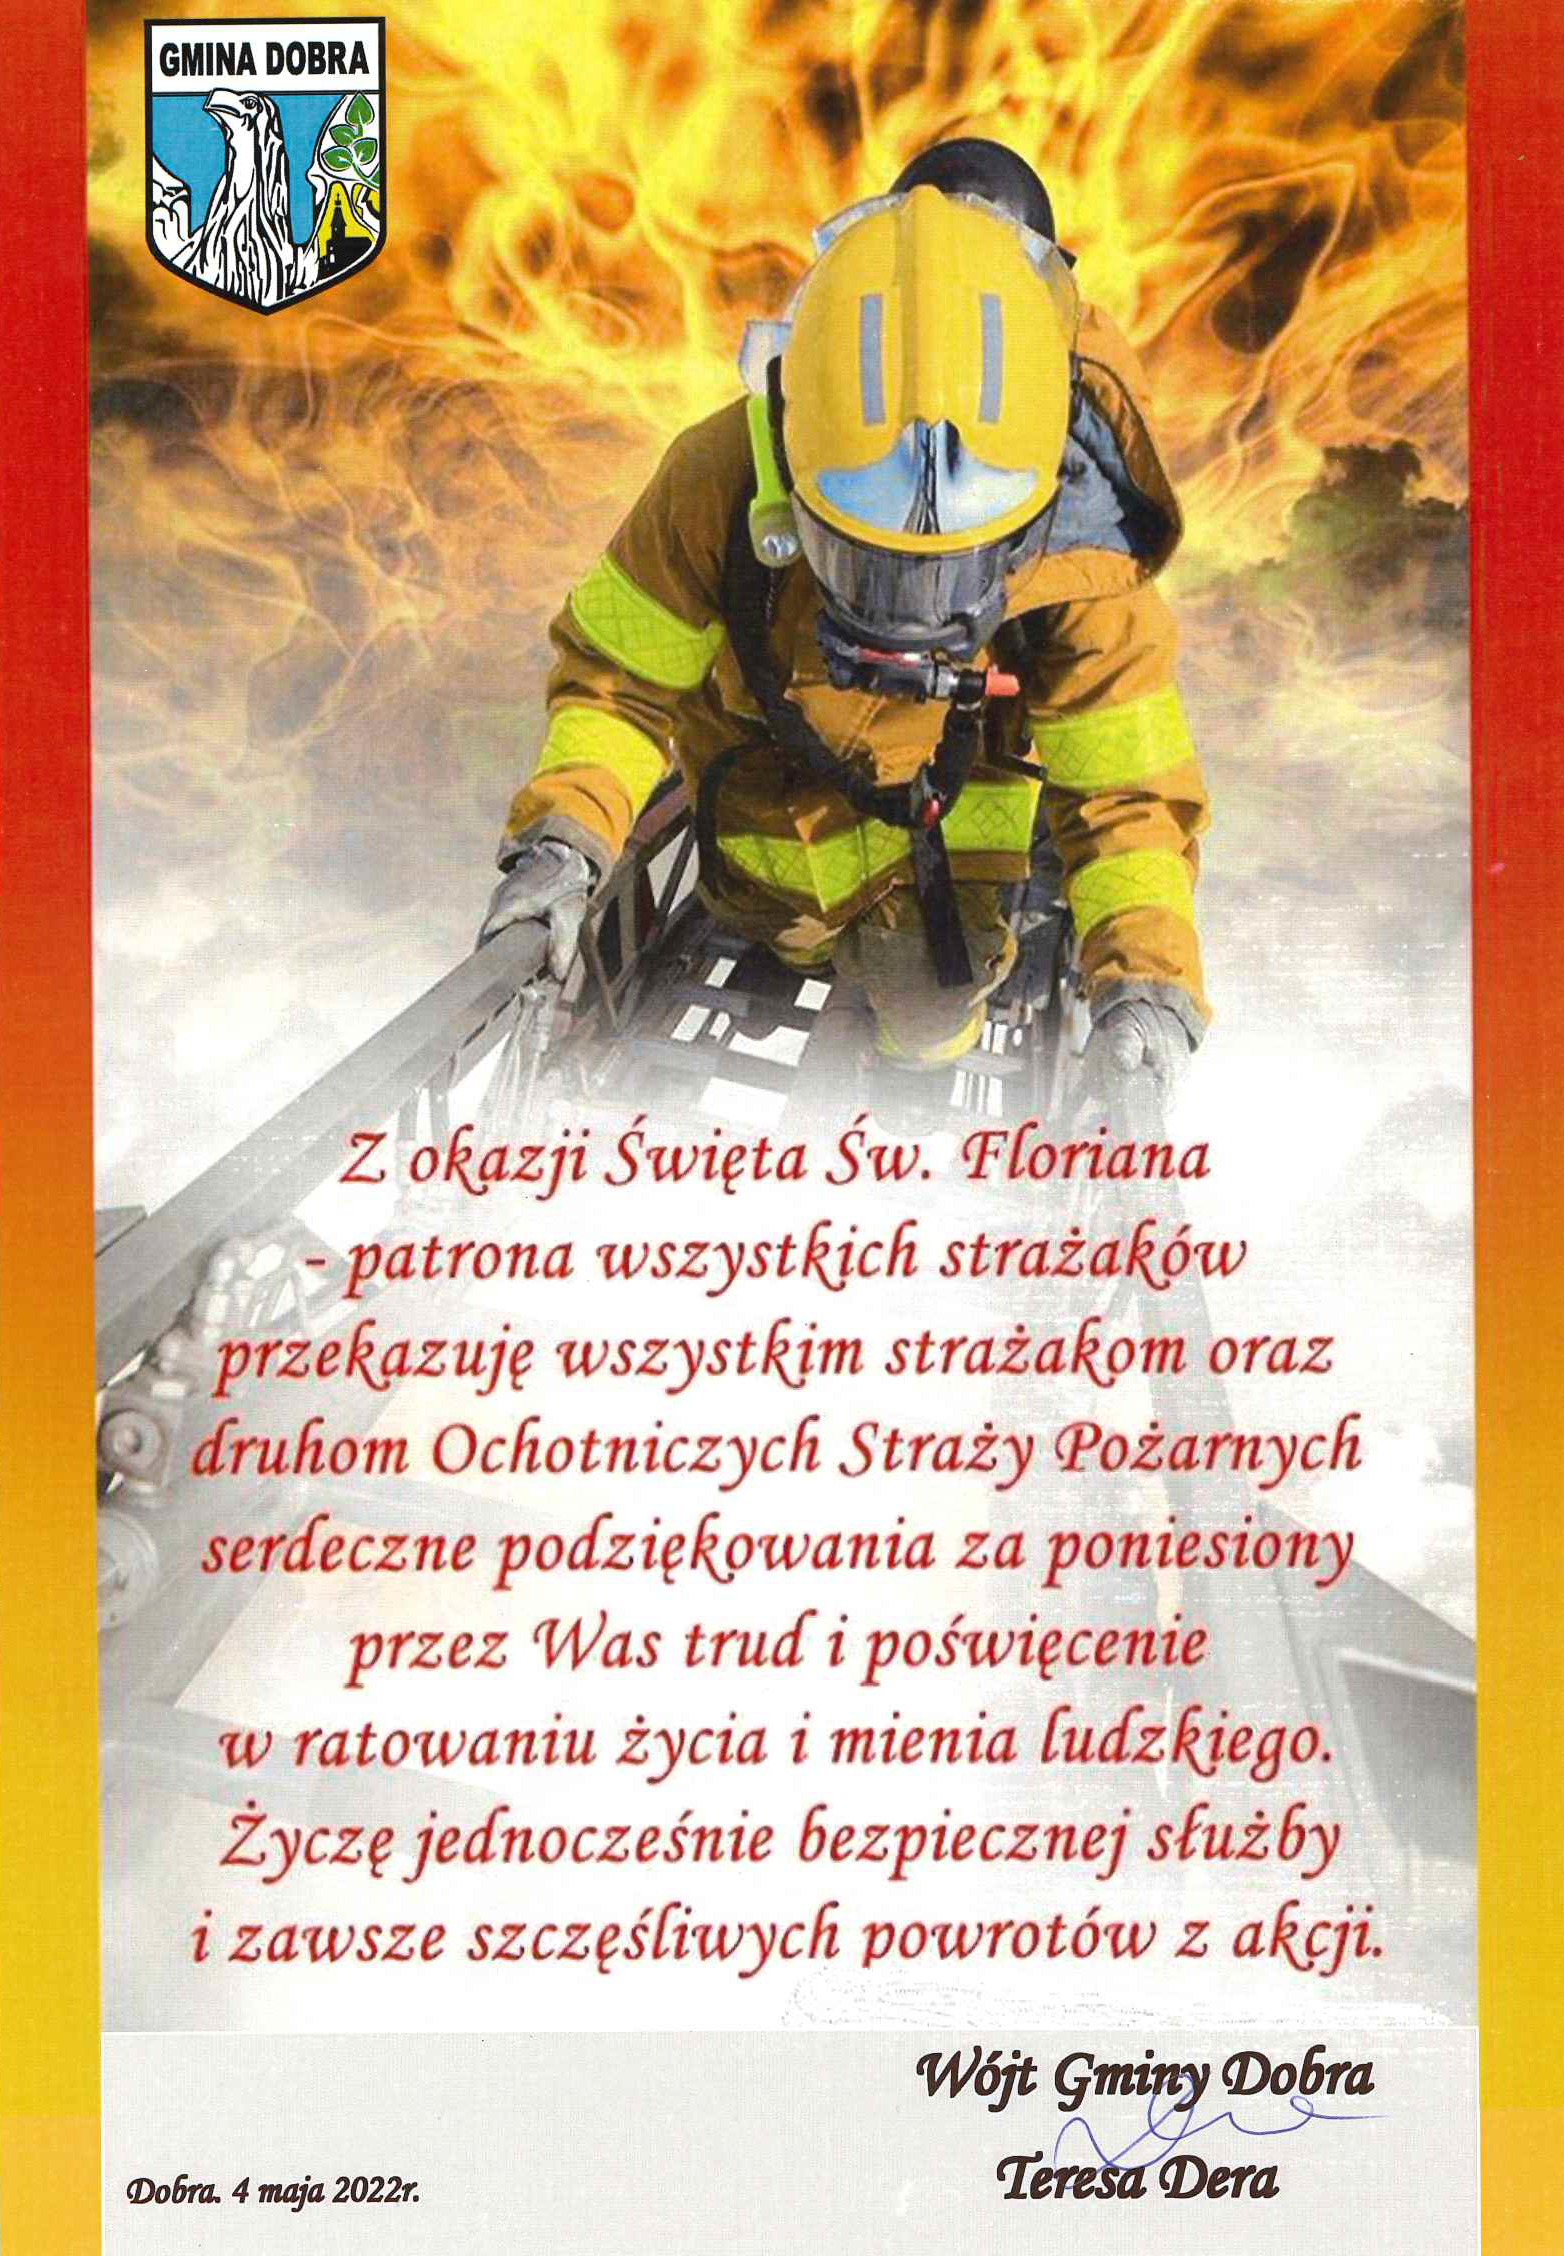 Dzień św. Floriana – święto wszystkich strażaków